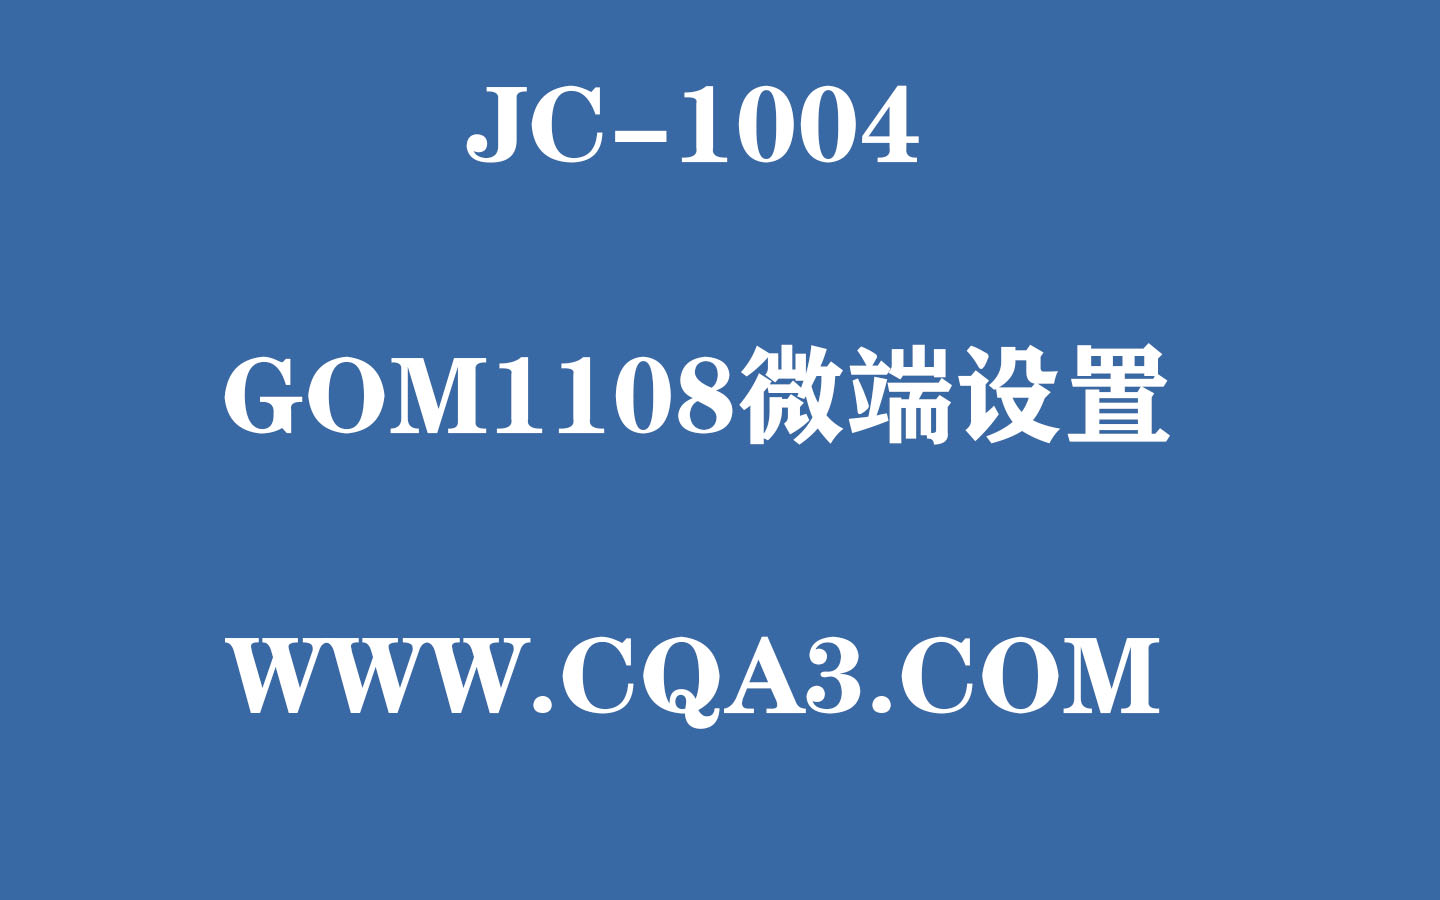 1004-GOM1108微端设置-落日资源库